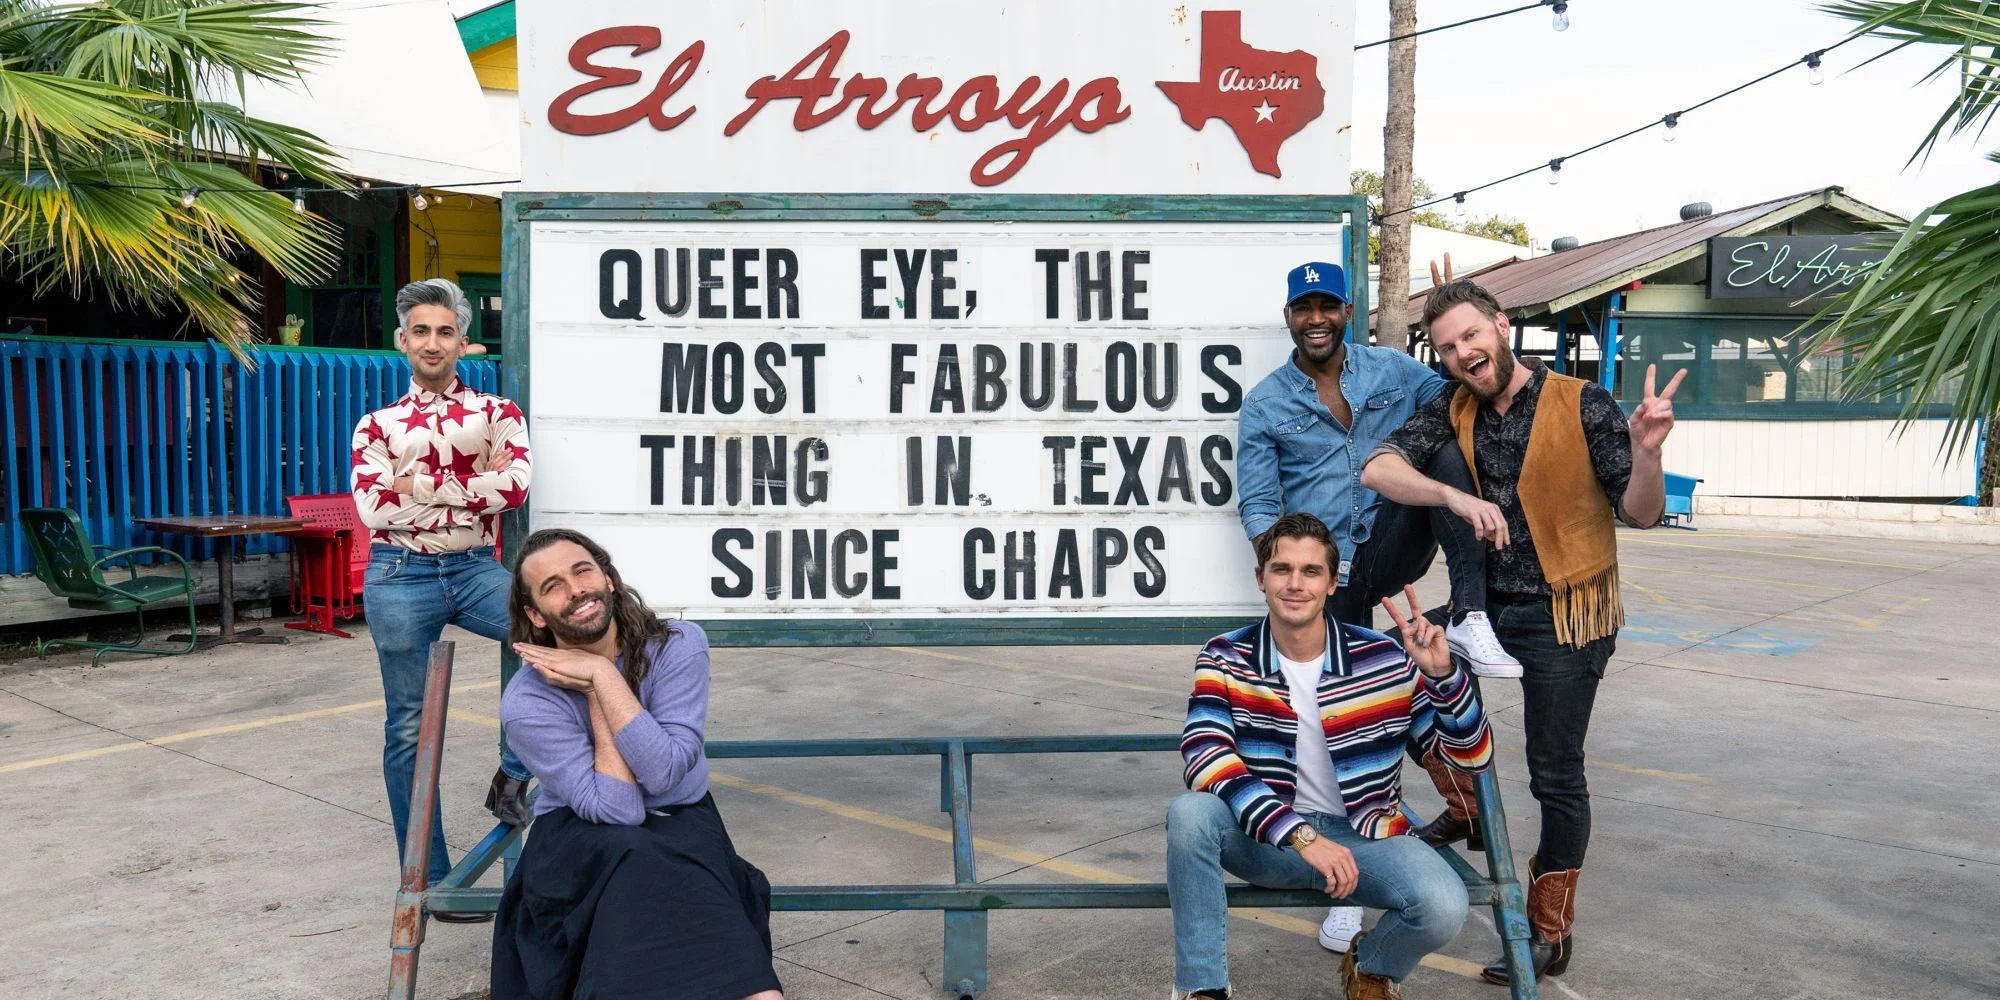 Cena da série Queer Eye. Nela, 6 pessoas estão encostadas em uma enorme placa do restaurante El Arroyo no Texas, com o letreiro em inglês. 